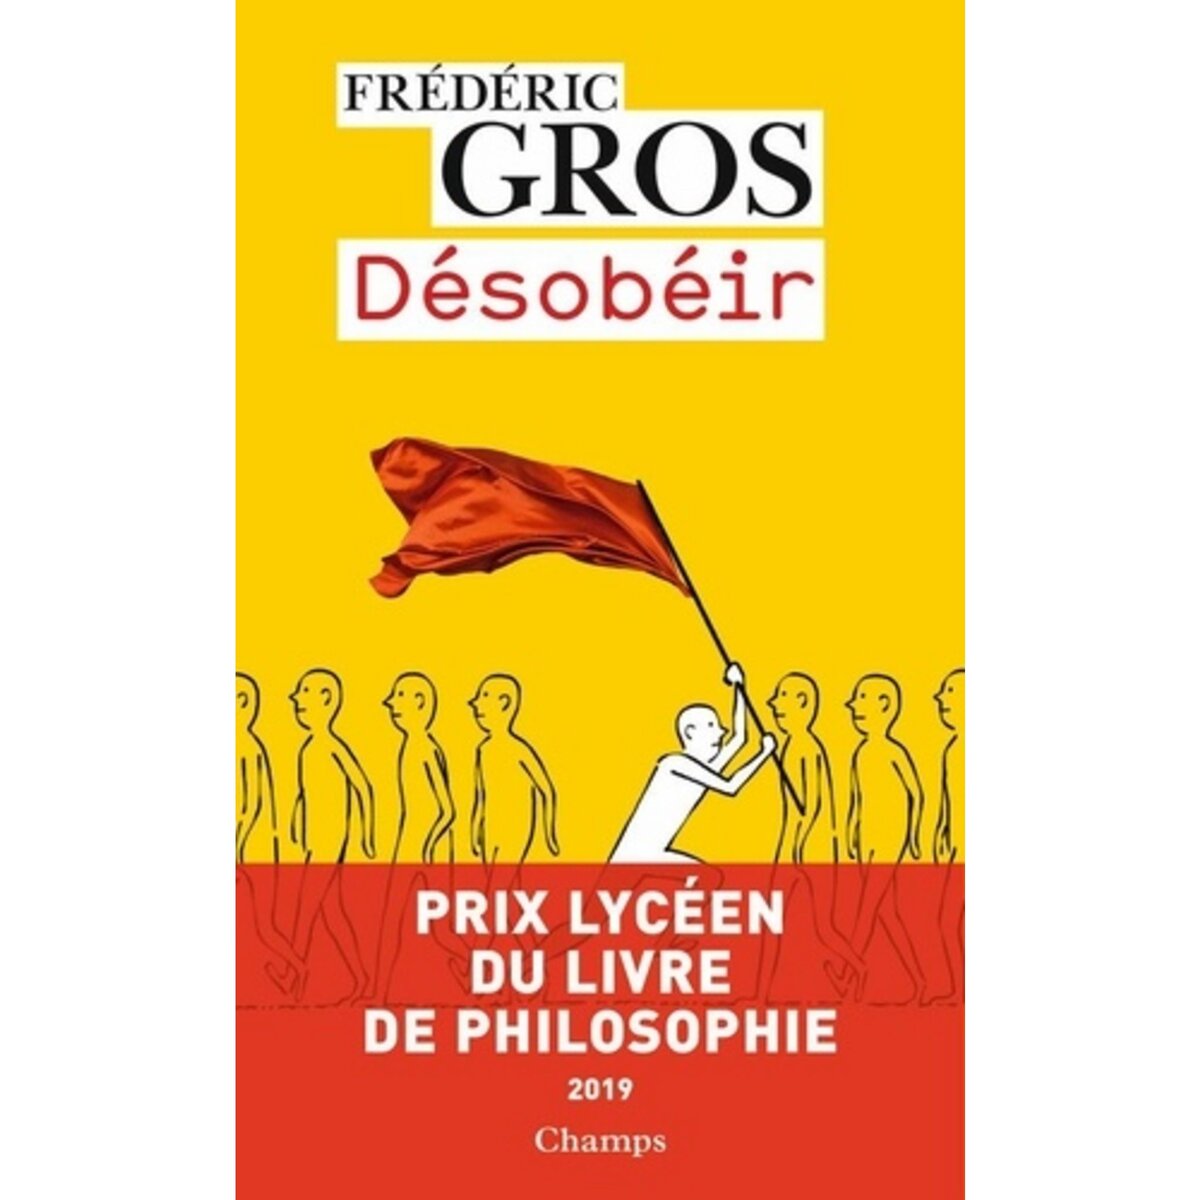  DESOBEIR. EDITION REVUE ET AUGMENTEE, Gros Frédéric